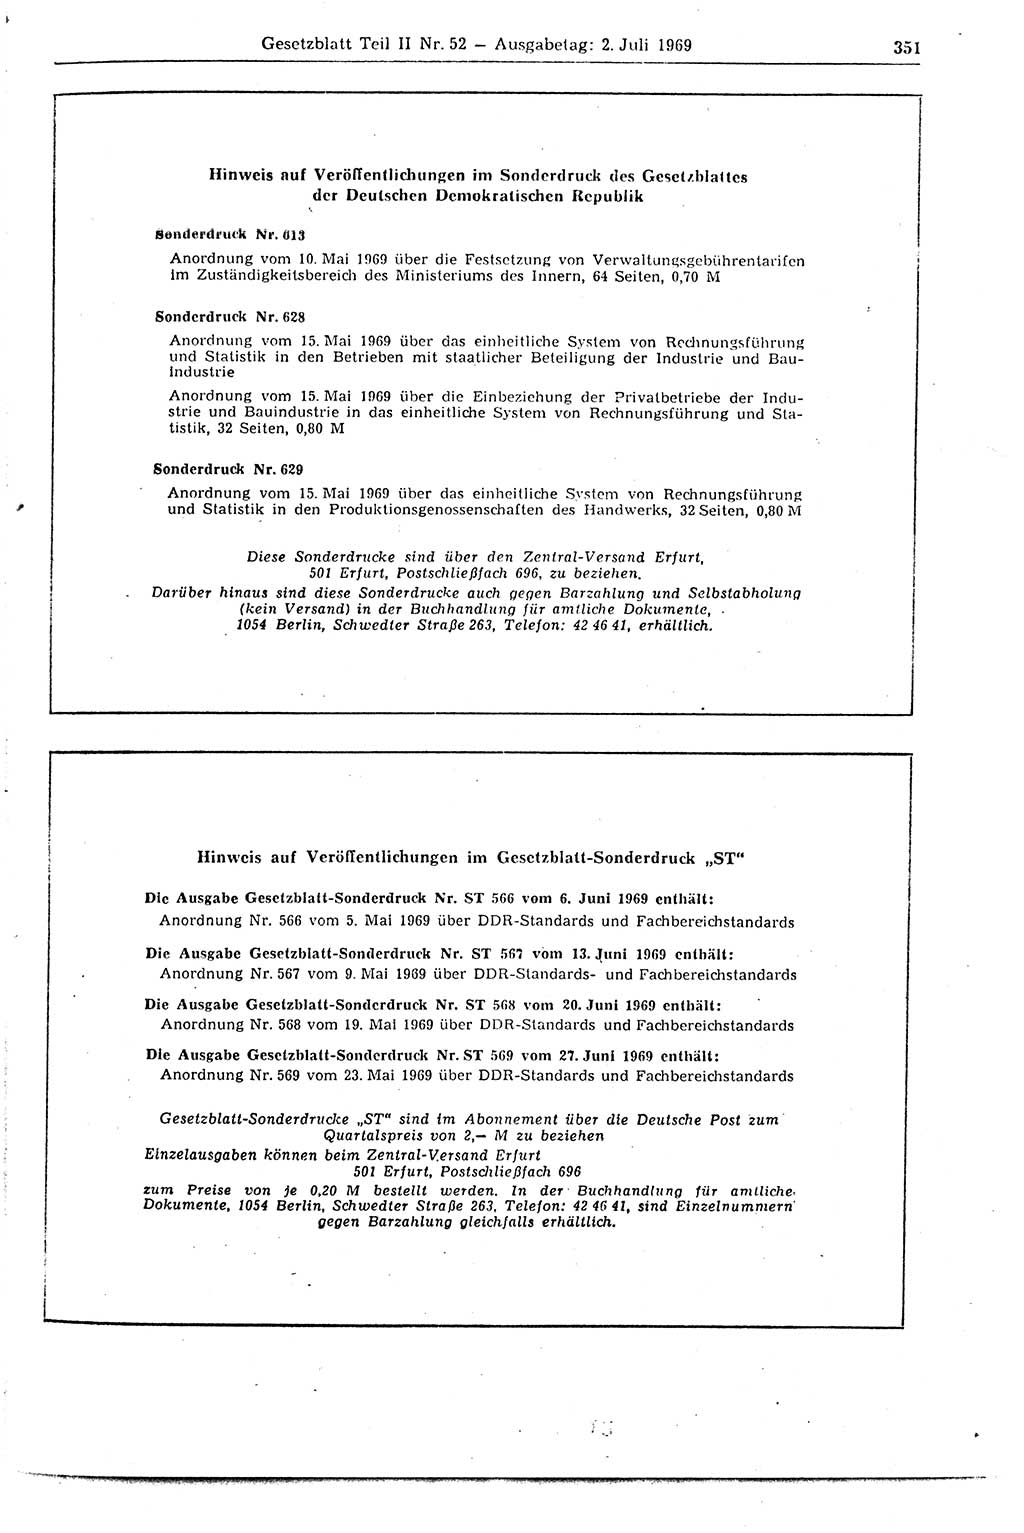 Gesetzblatt (GBl.) der Deutschen Demokratischen Republik (DDR) Teil ⅠⅠ 1969, Seite 351 (GBl. DDR ⅠⅠ 1969, S. 351)